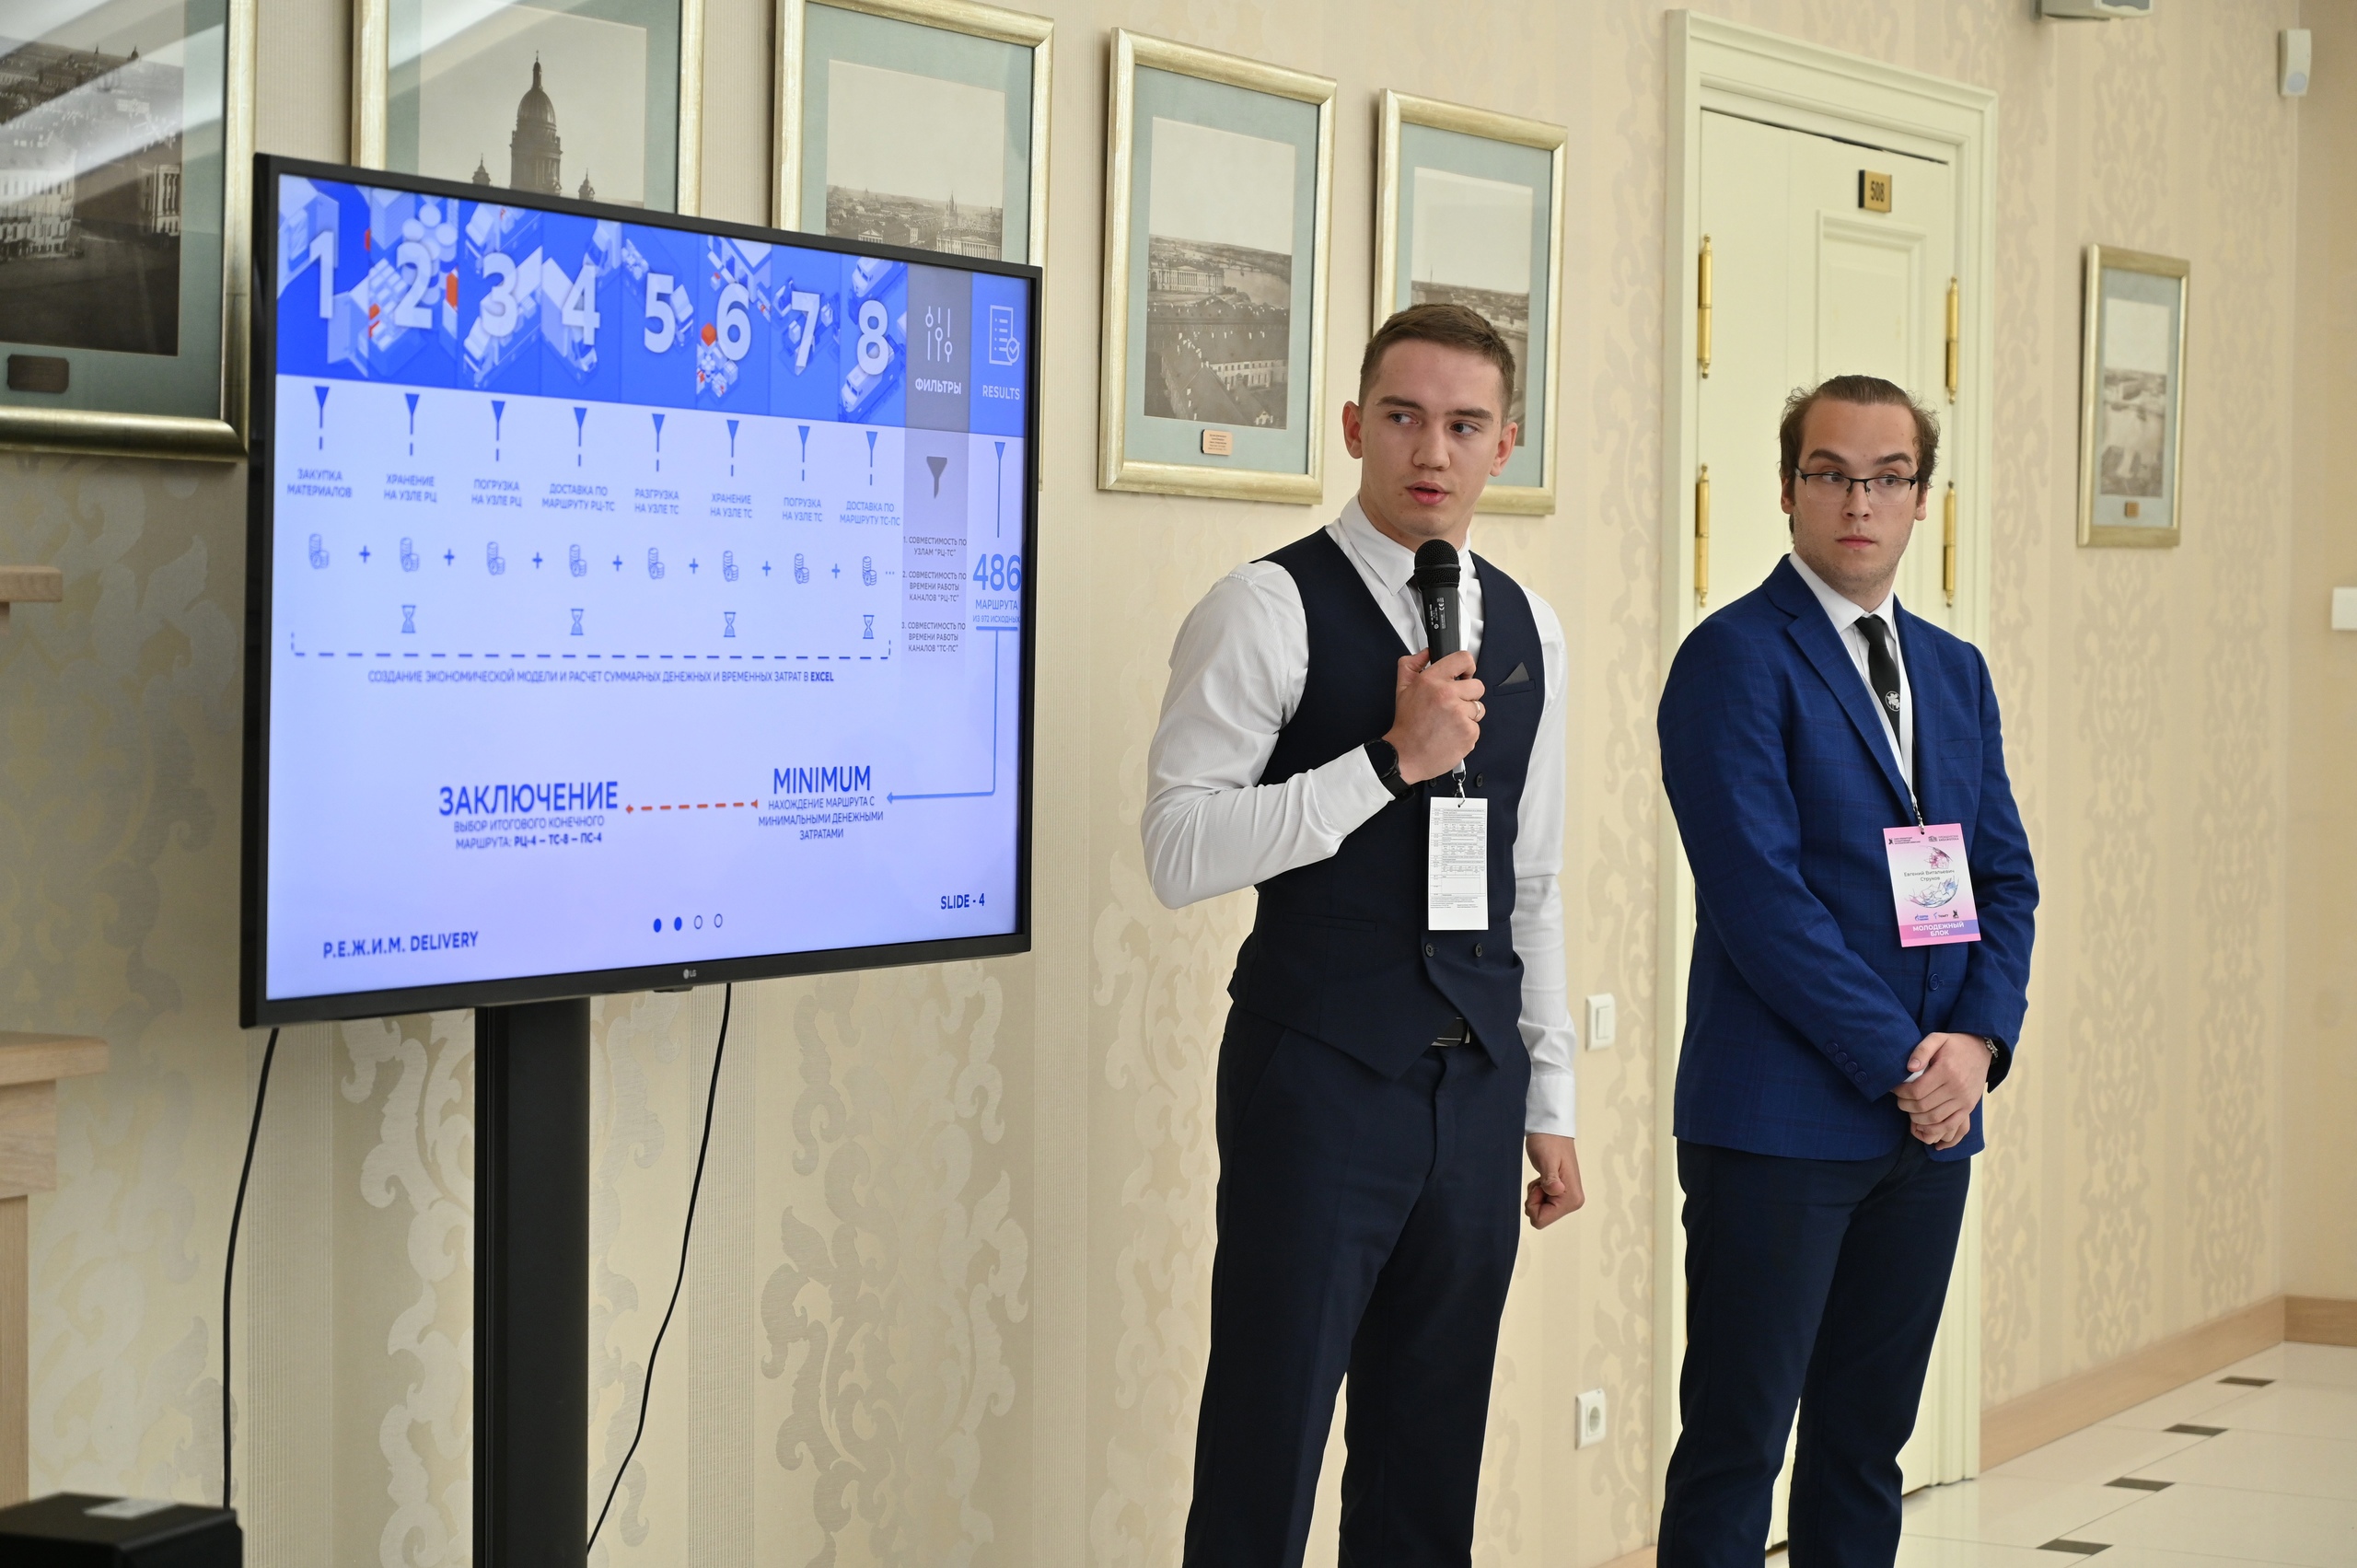 Команда студентов ЮГУ стала победителем финала II Всероссийского кейс-чемпионата «ProЭнергетику»